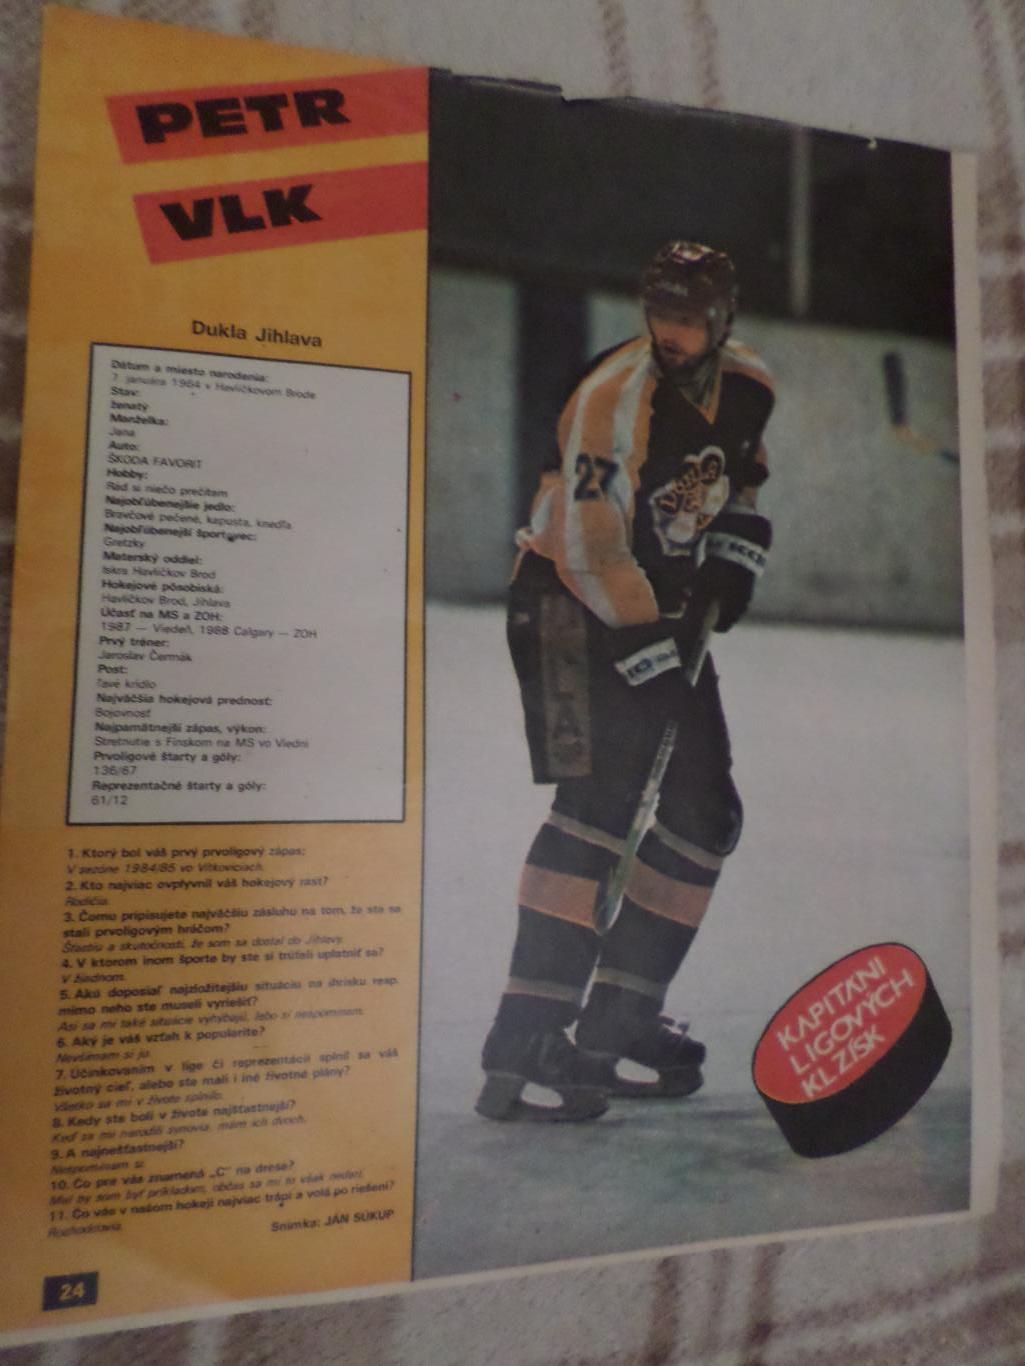 постер из журнала Старт Чехословакия хоккей Петер Влк Дукла Йиглава.